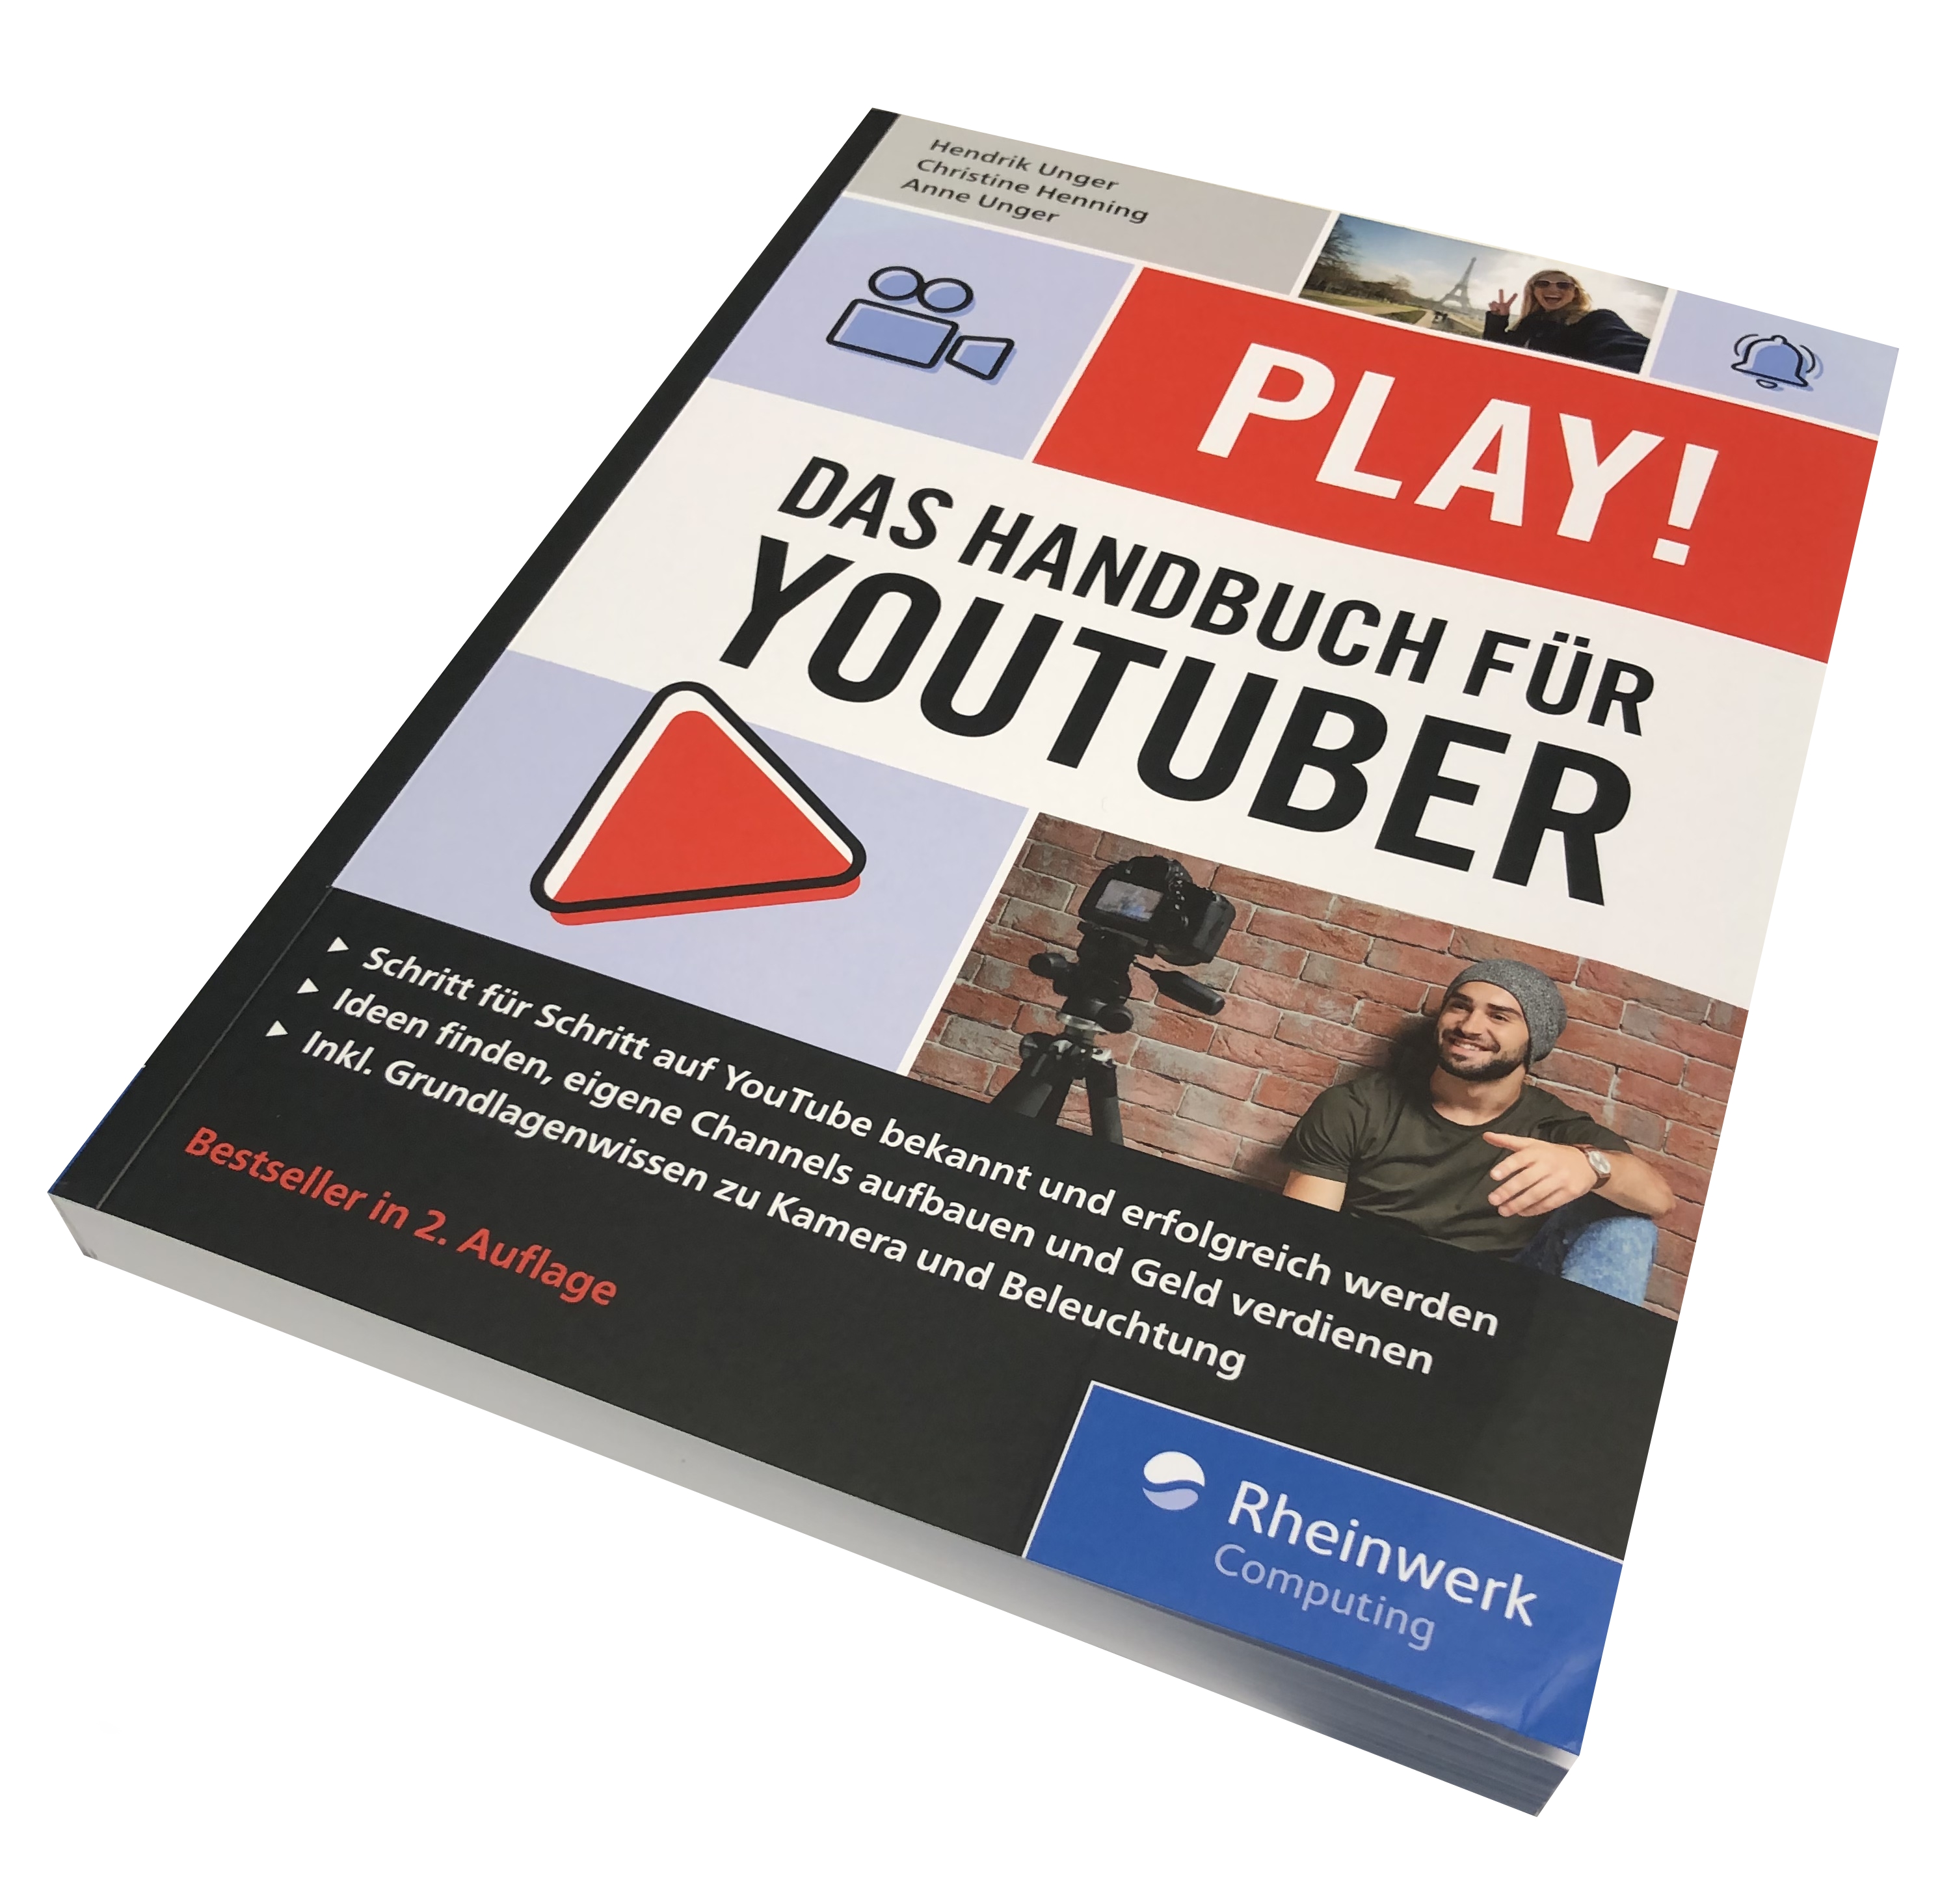 PLAY! - Das Handbuch für Youtuber